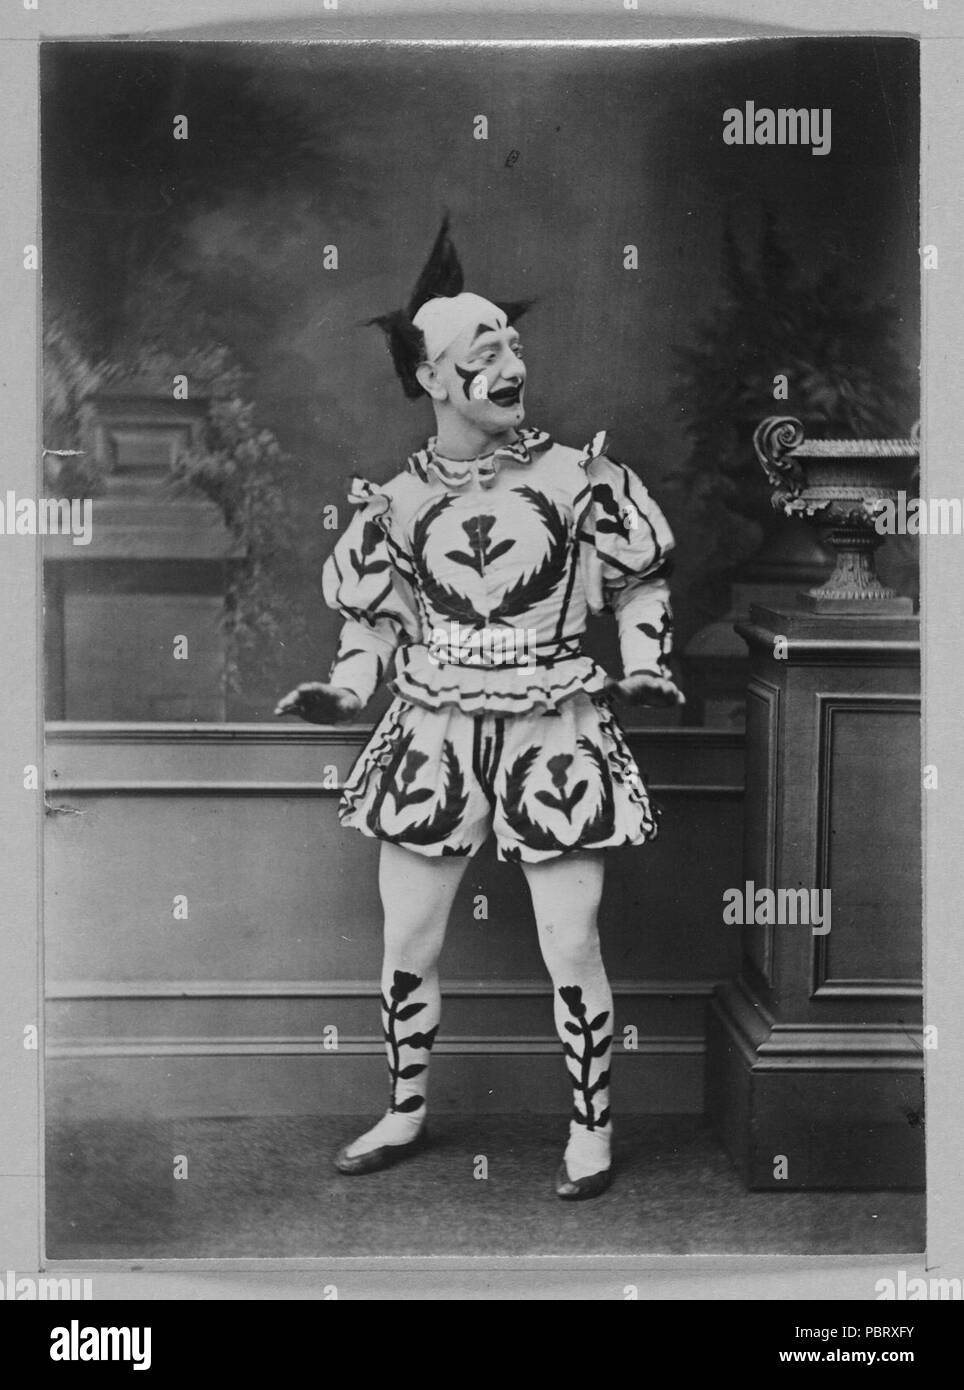 Schauspieler in Clown Kostüm - Stockfoto